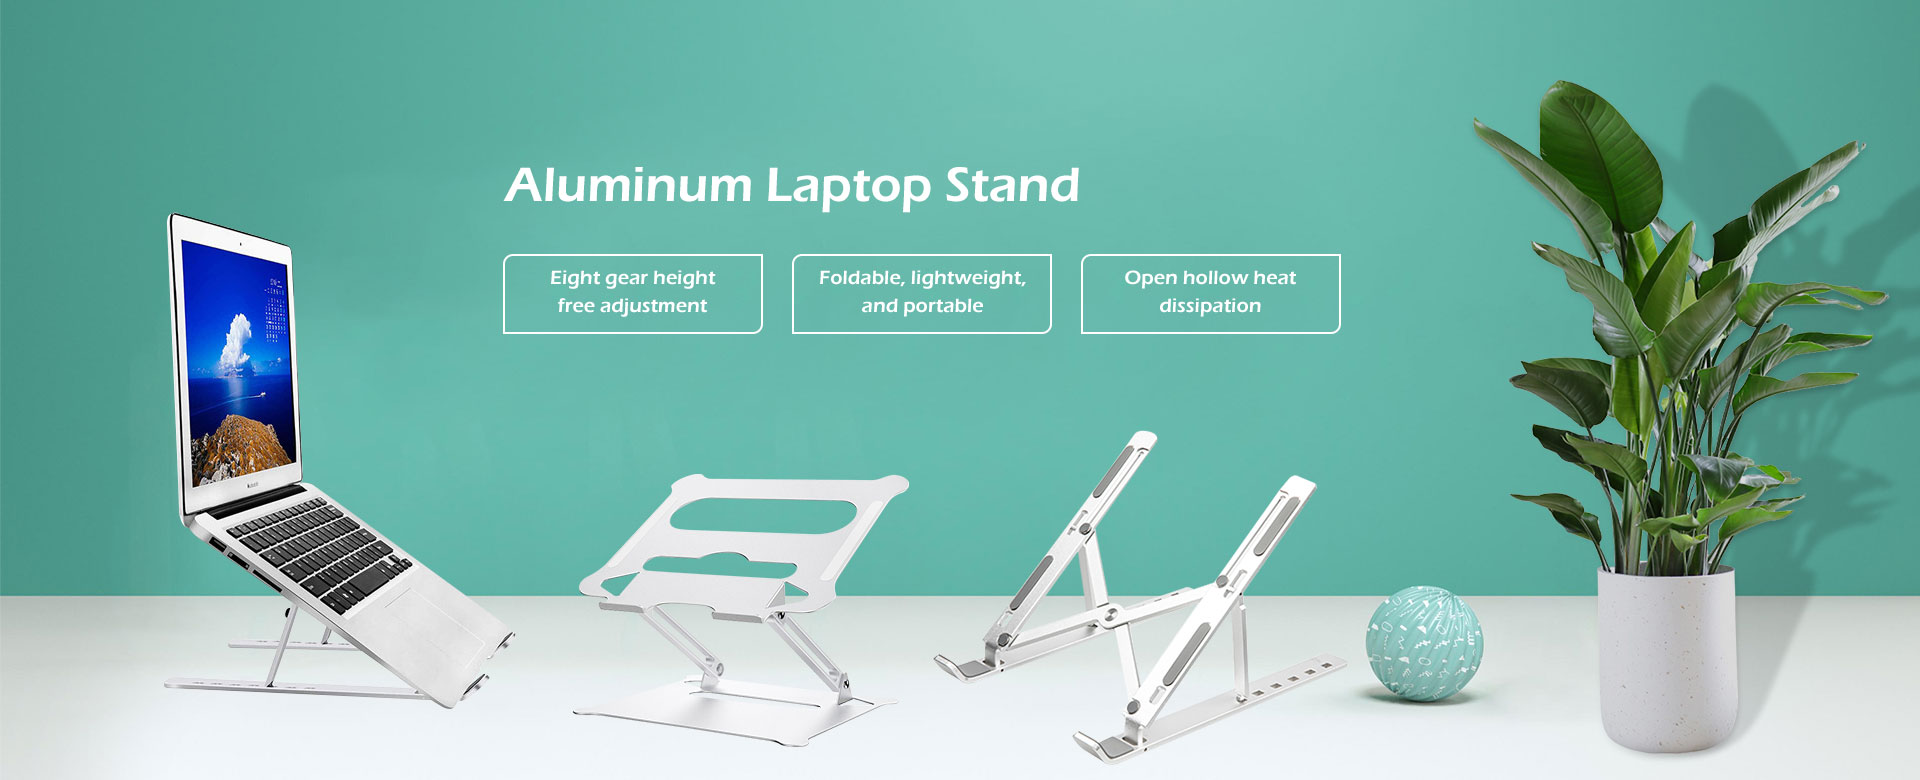 Kina Aluminum Laptop Stand Manufacturers